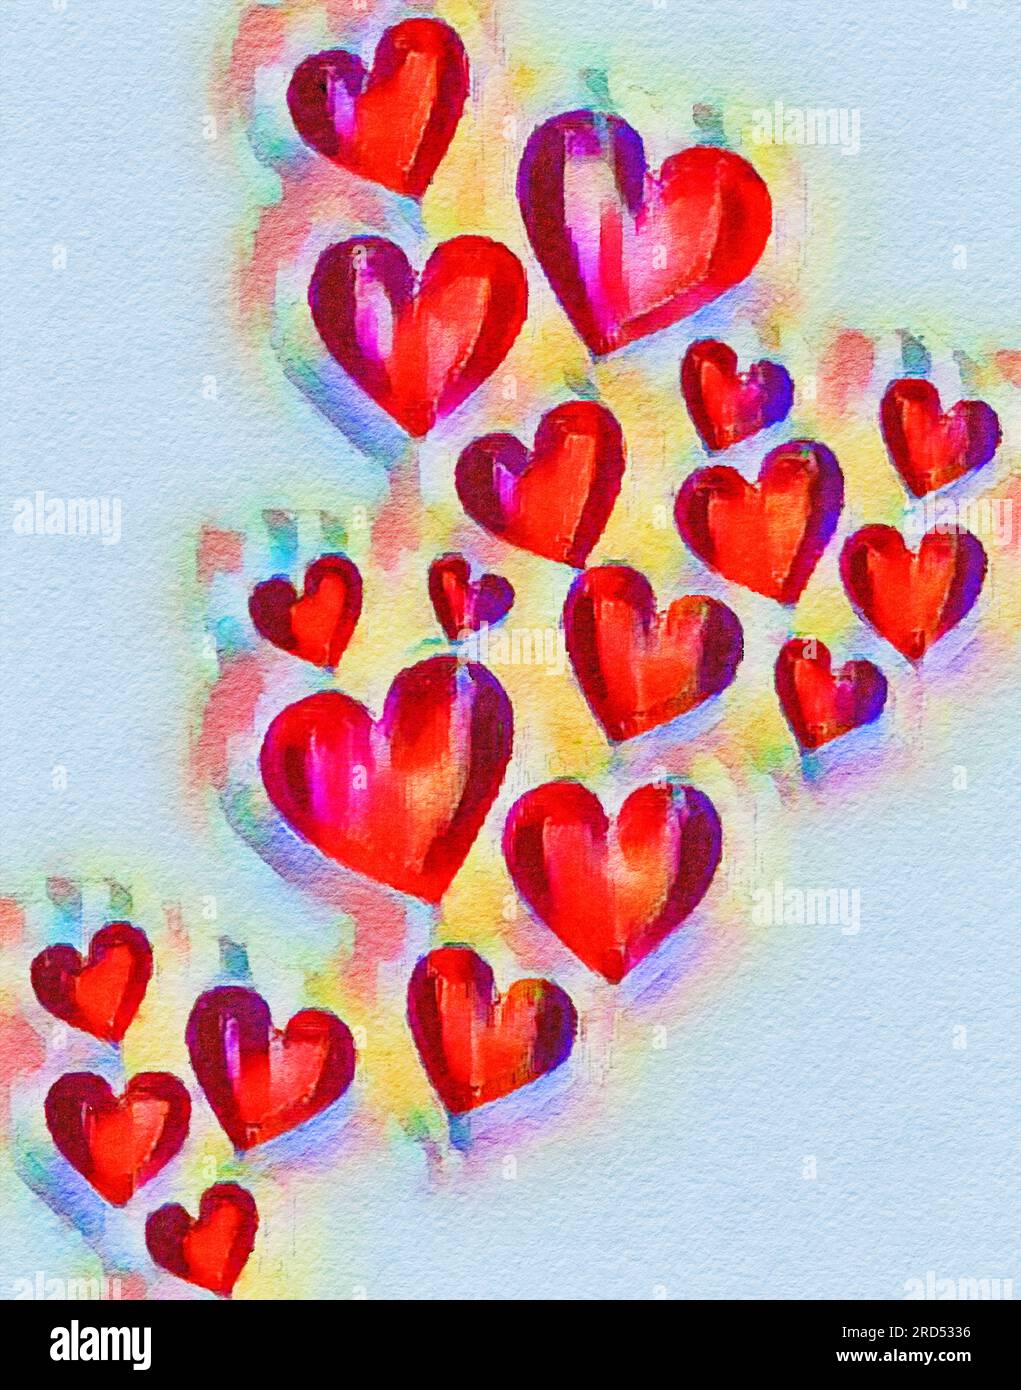 Los corazones, los rojos, se ven en una ilustración de pintura de acuarela. Foto de stock